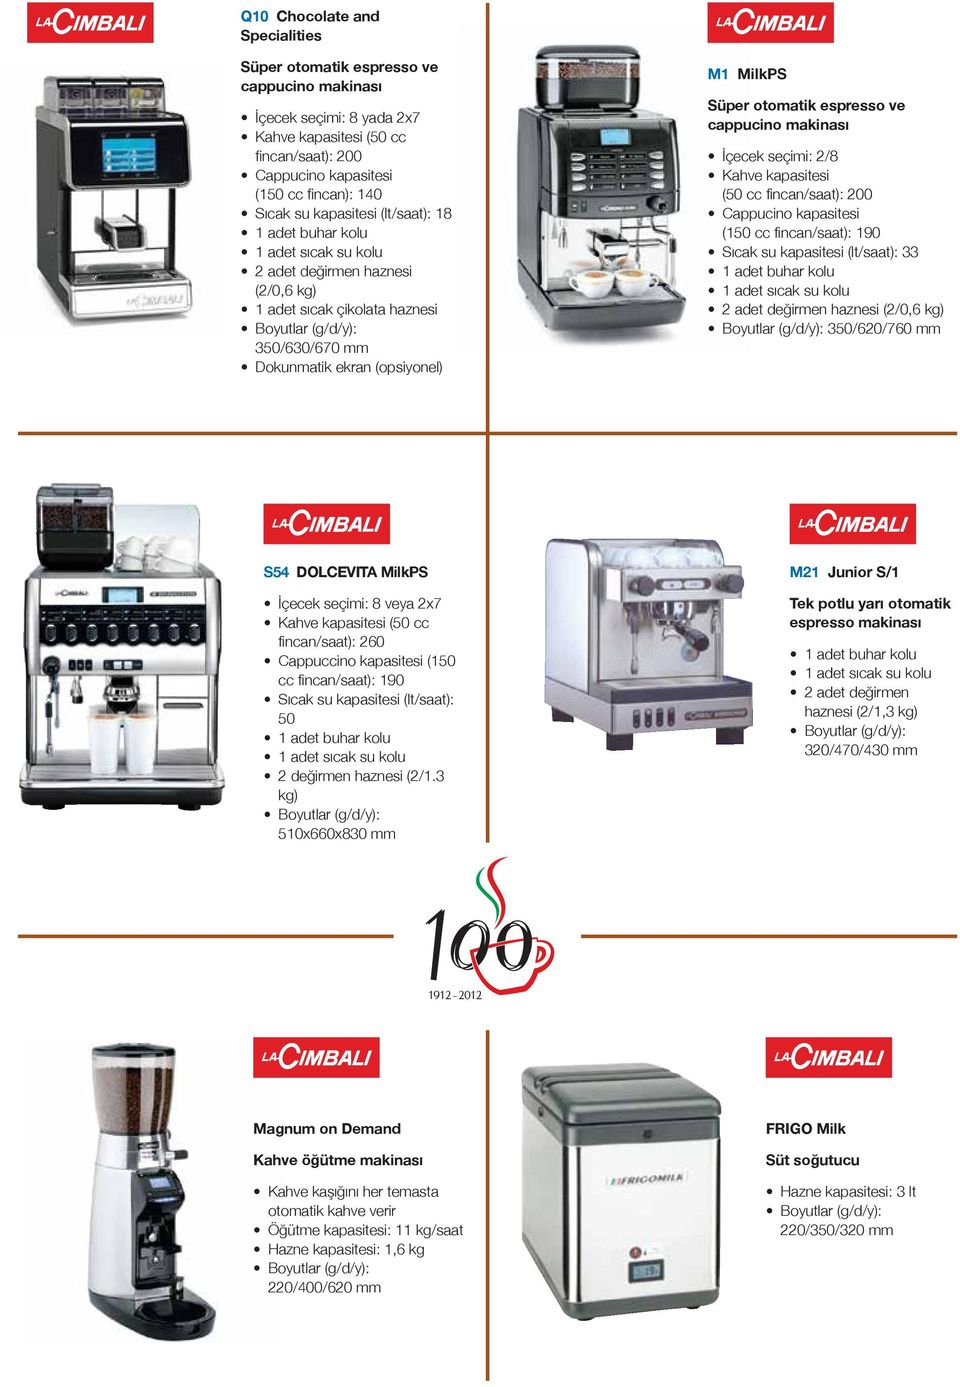 makinası İçecek seçimi: 2/8 Kahve kapasitesi (50 cc fincan/saat): 200 Cappucino kapasitesi (150 cc fincan/saat): 190 Sıcak su kapasitesi (lt/saat): 33 1 adet buhar kolu 2 adet değirmen haznesi (2/0,6